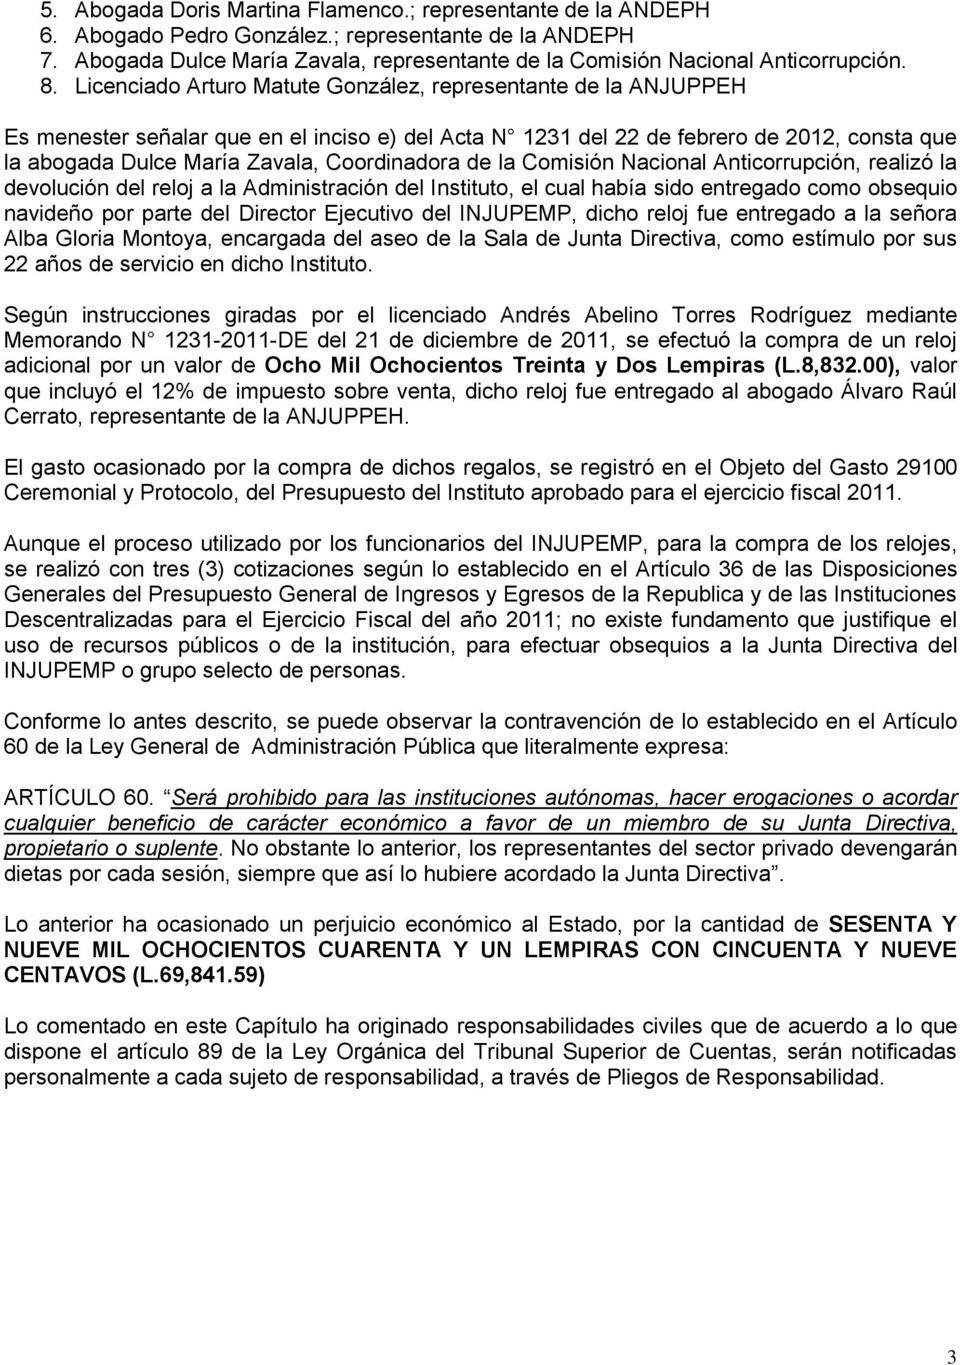 Licenciado Arturo Matute González, representante de la ANJUPPEH Es menester señalar que en el inciso e) del Acta N 1231 del 22 de febrero de 2012, consta que la abogada Dulce María Zavala,